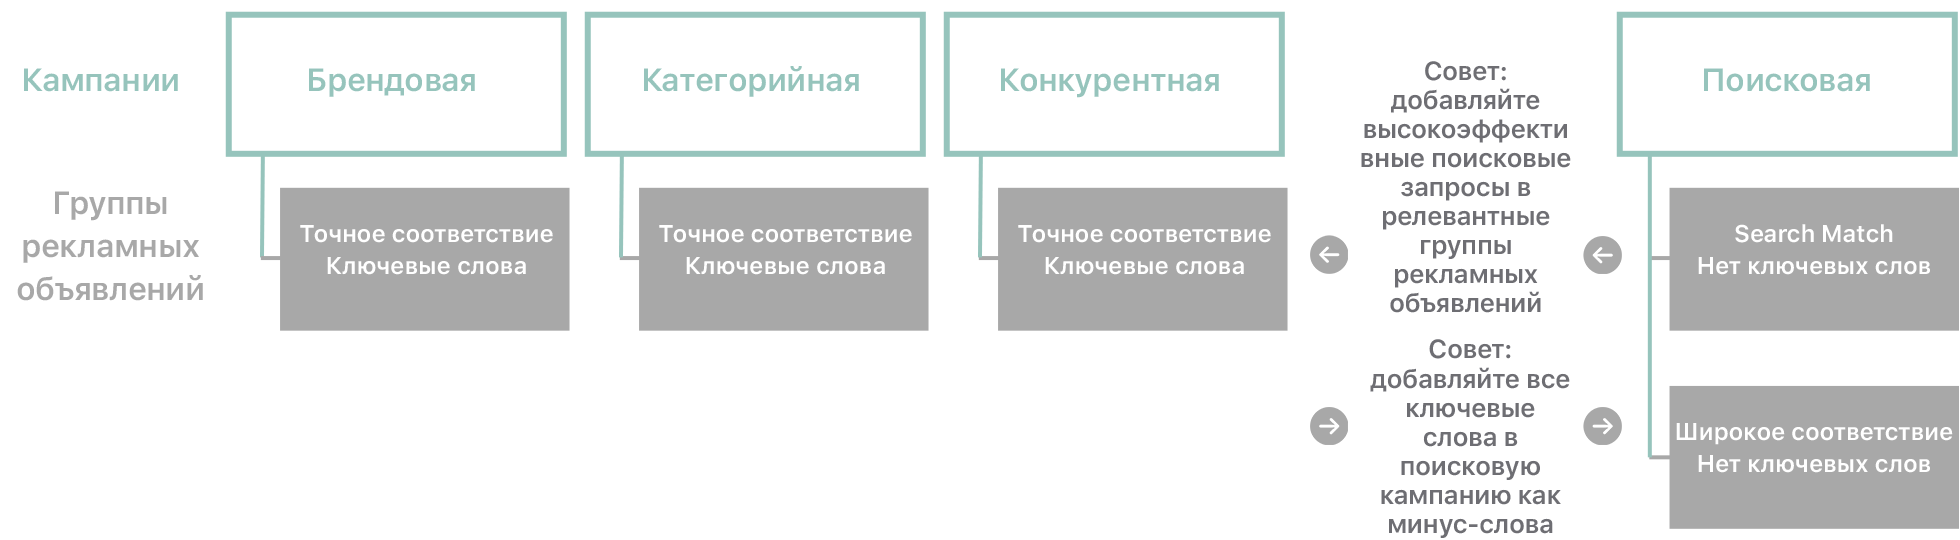 Схема, показывающая типы кампаний и связанные с ними группы рекламных объявлений, а также рекомендации по ключевым словам. 